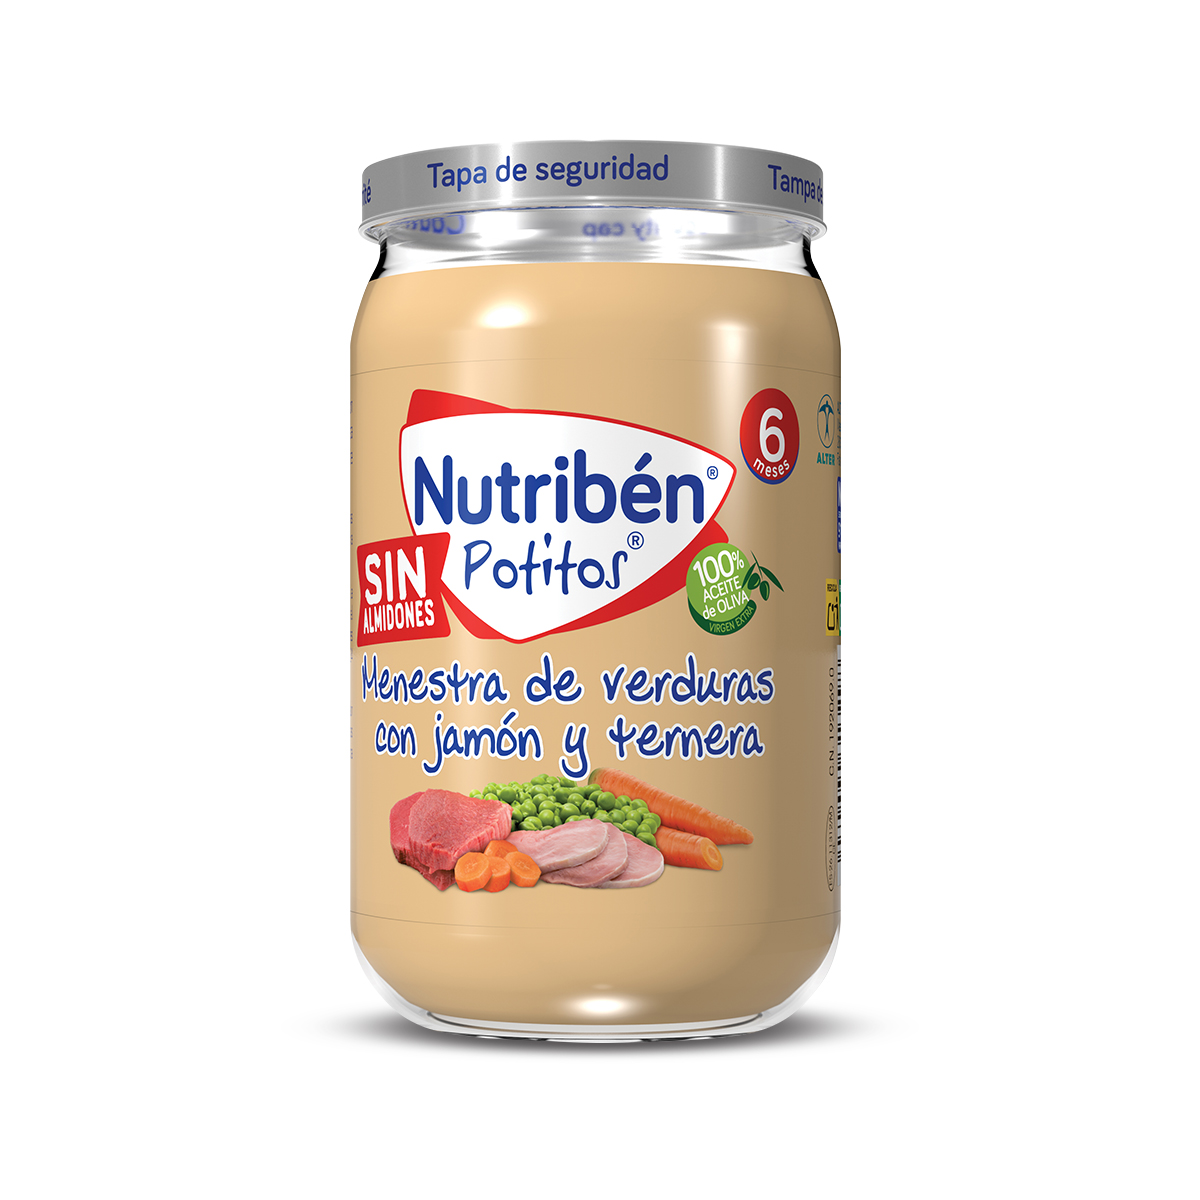 Nutribén Potitos Crema de Verduras Duplo 190g + 190g